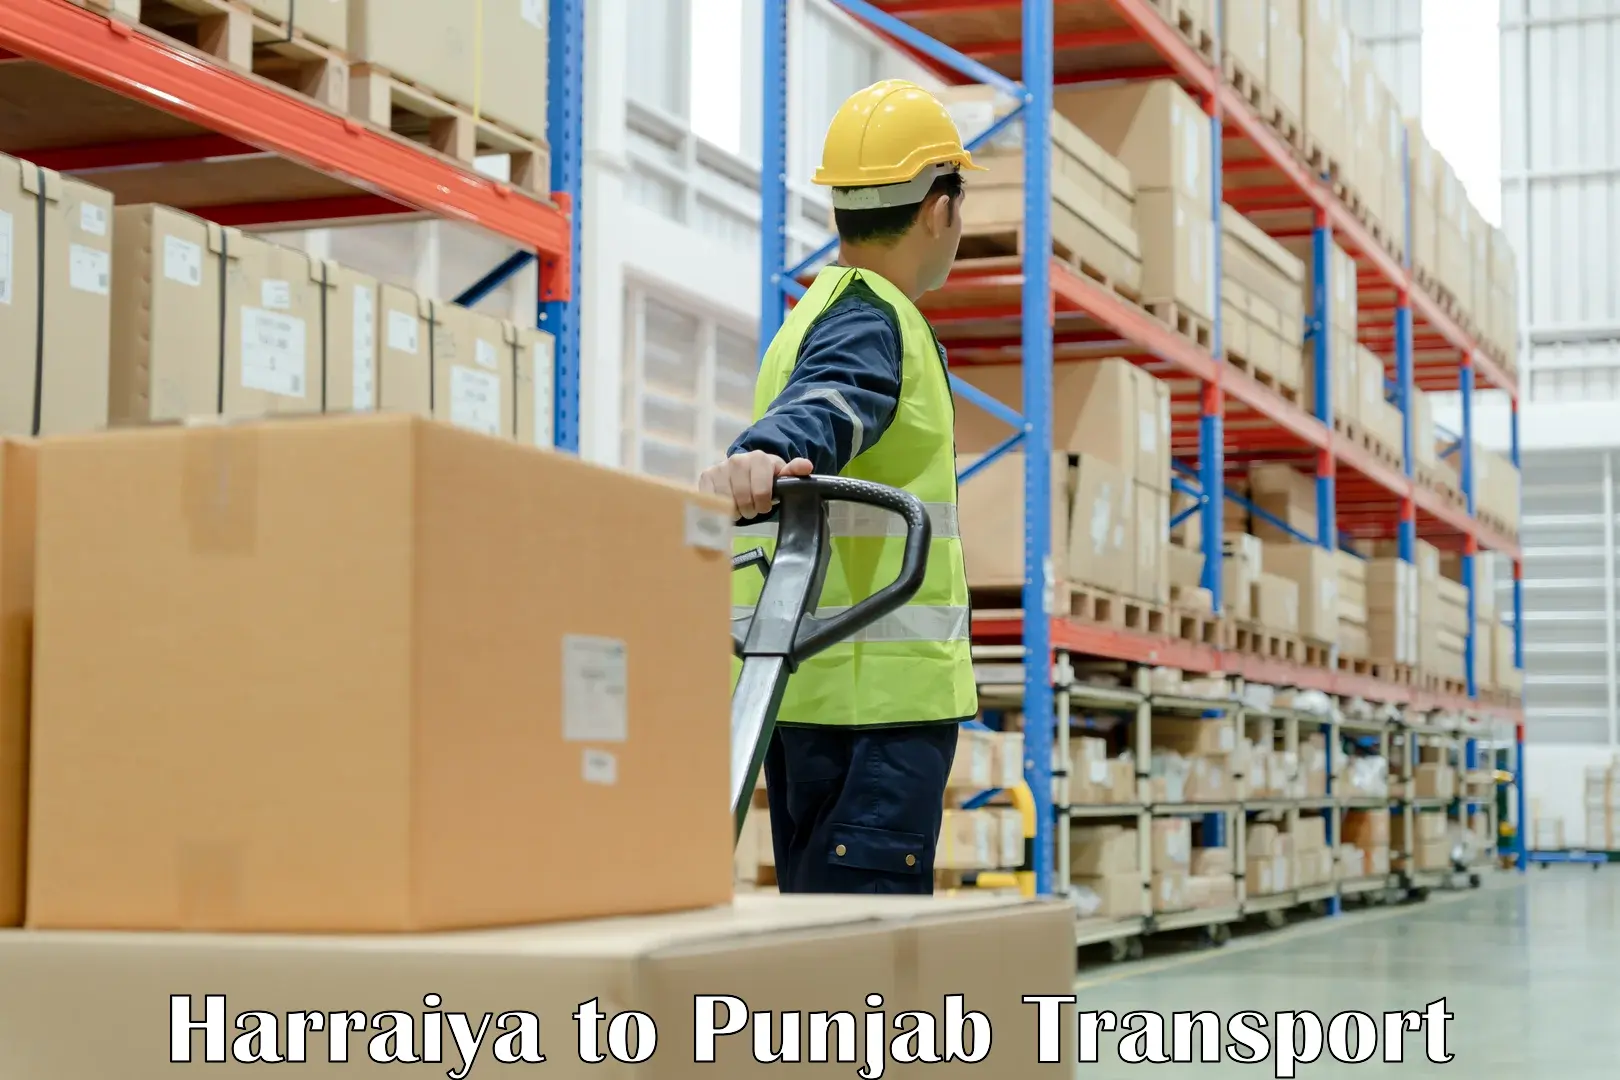 Container transportation services Harraiya to Rupnagar